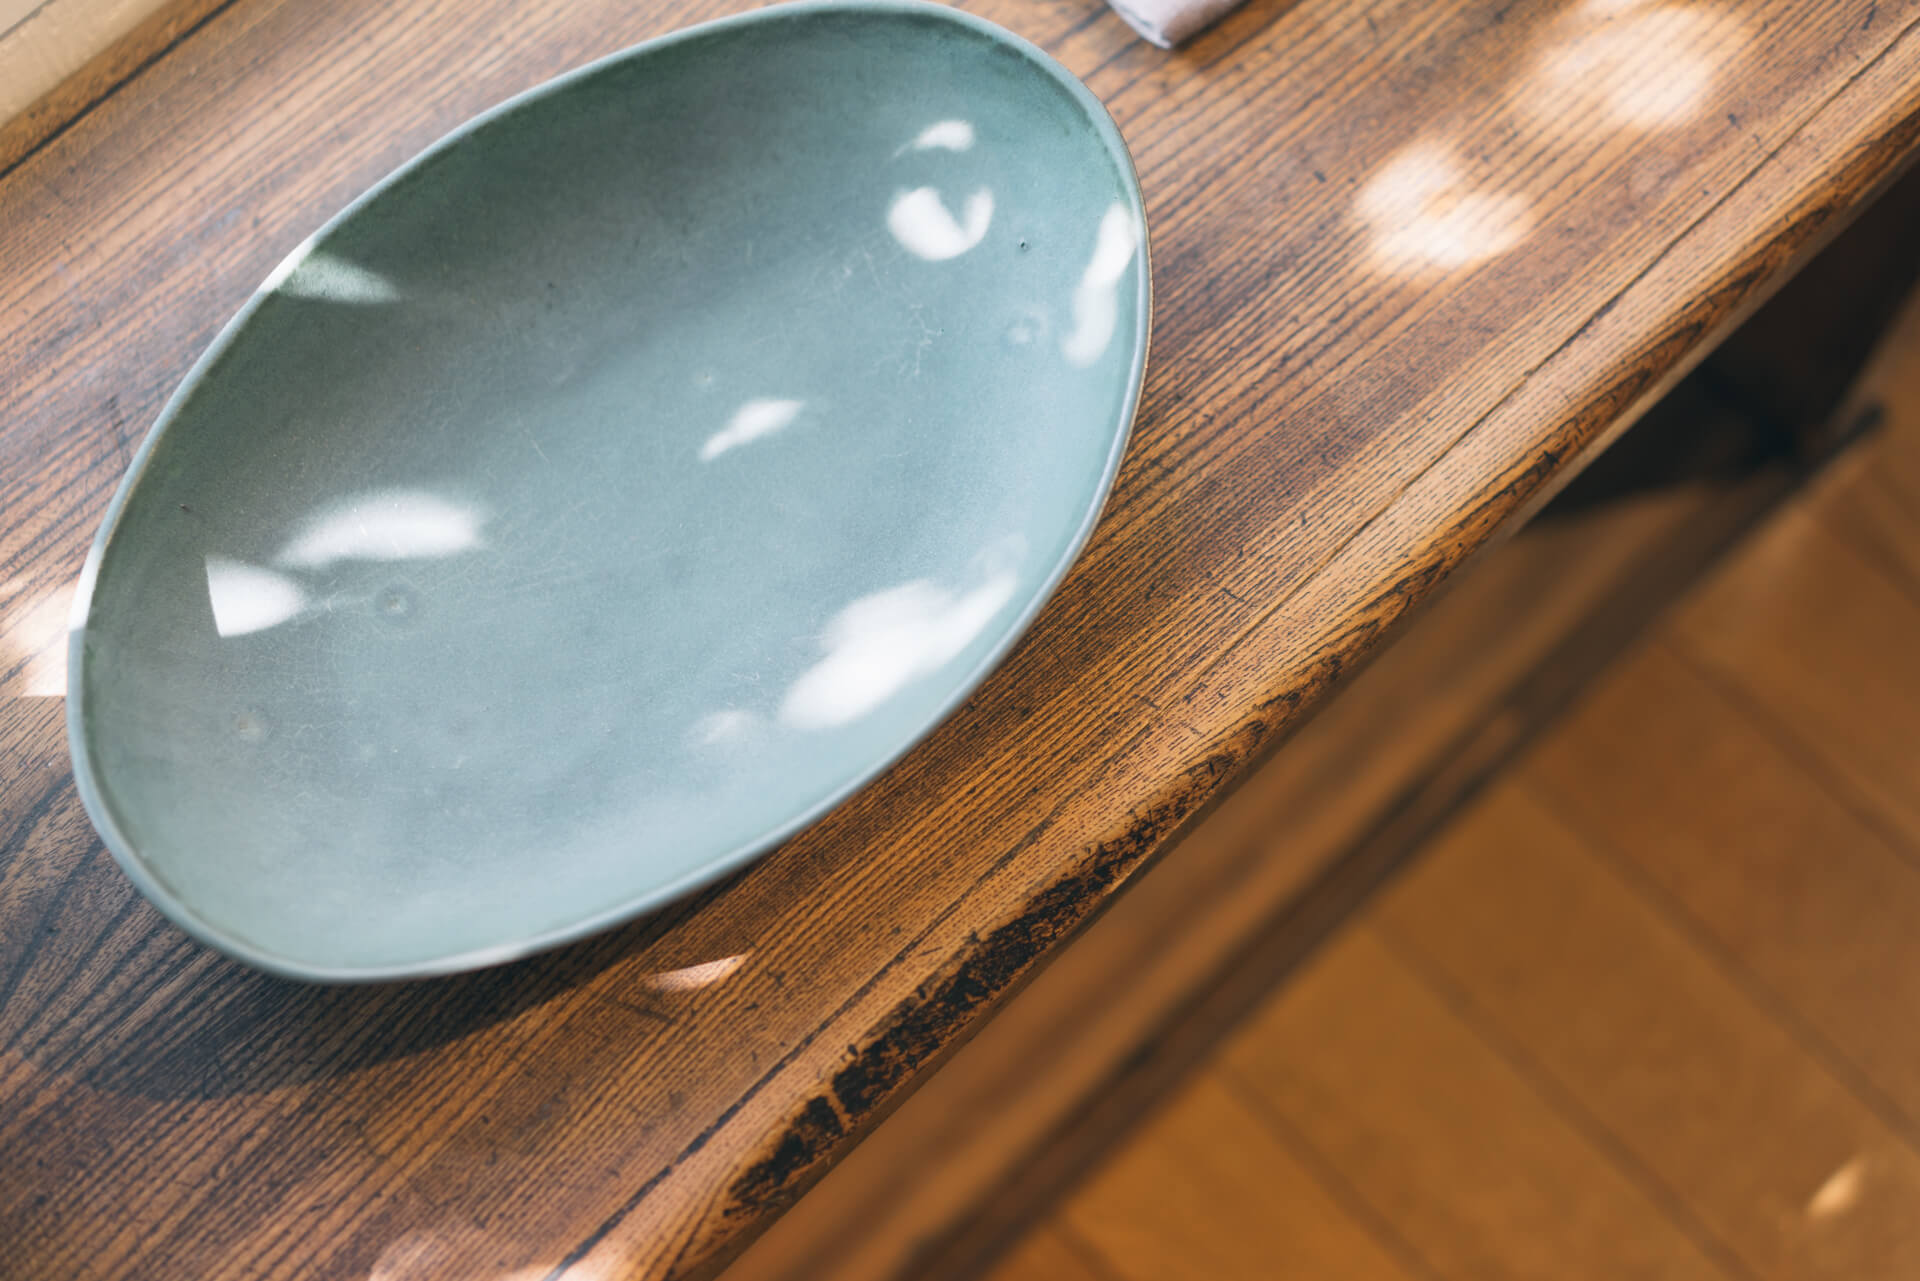 なんとも印象的な色合いの楕円のお皿は、平野日奈子さんのもの。「白い器に載せるのとまた違った映え方をするので、食材との取り合わせも楽しめますね」